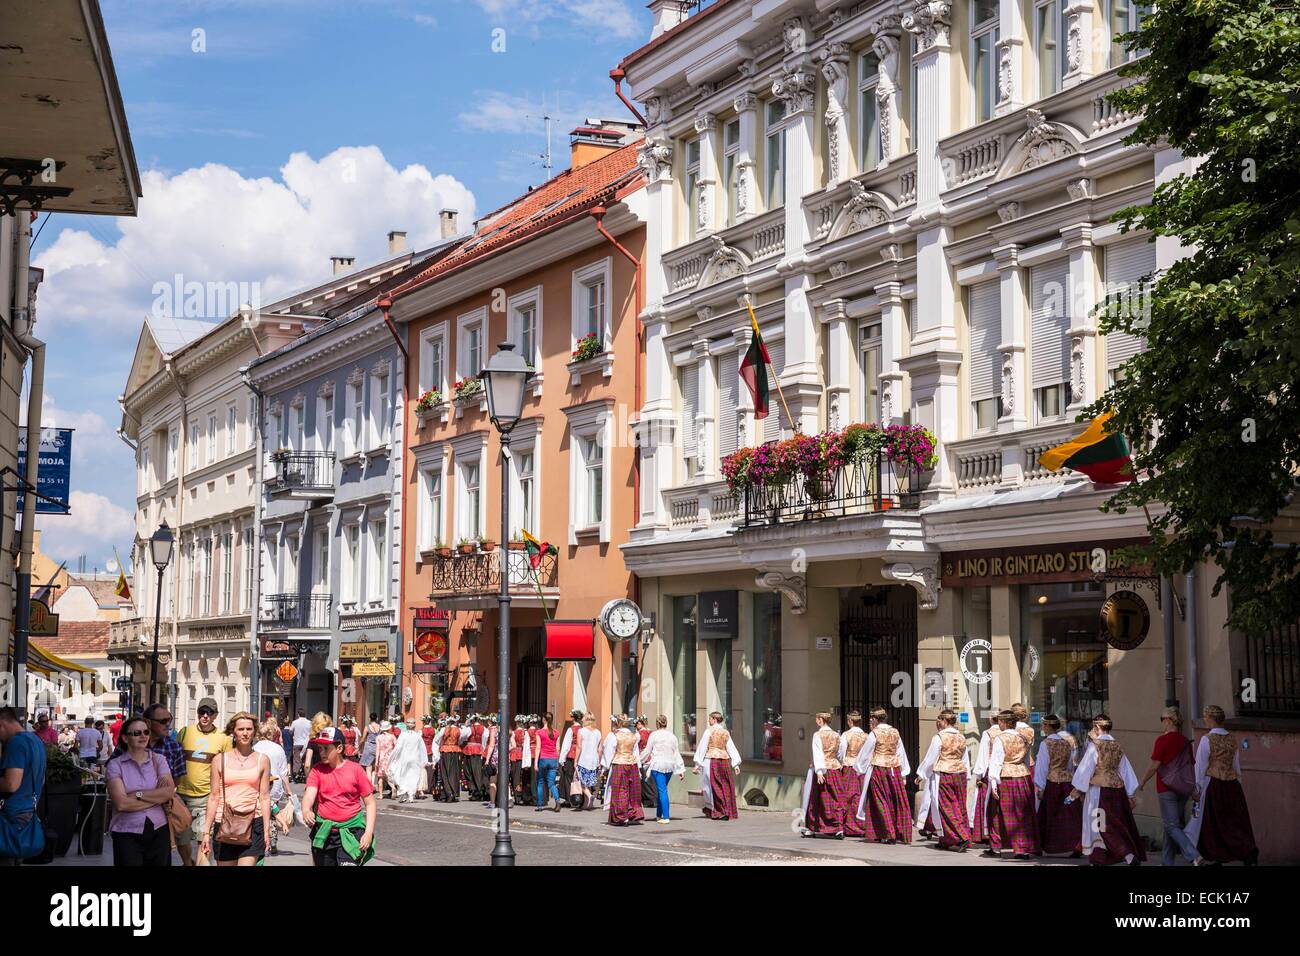 Litauen (Baltikum), Vilnius, die Altstadt Weltkulturerbe der UNESCO, Didzioji Gatve Straßenparade einer Folklore-Gruppe anlässlich der Feier der Krönung von König Mindaugas und Sängerfest Stockfoto